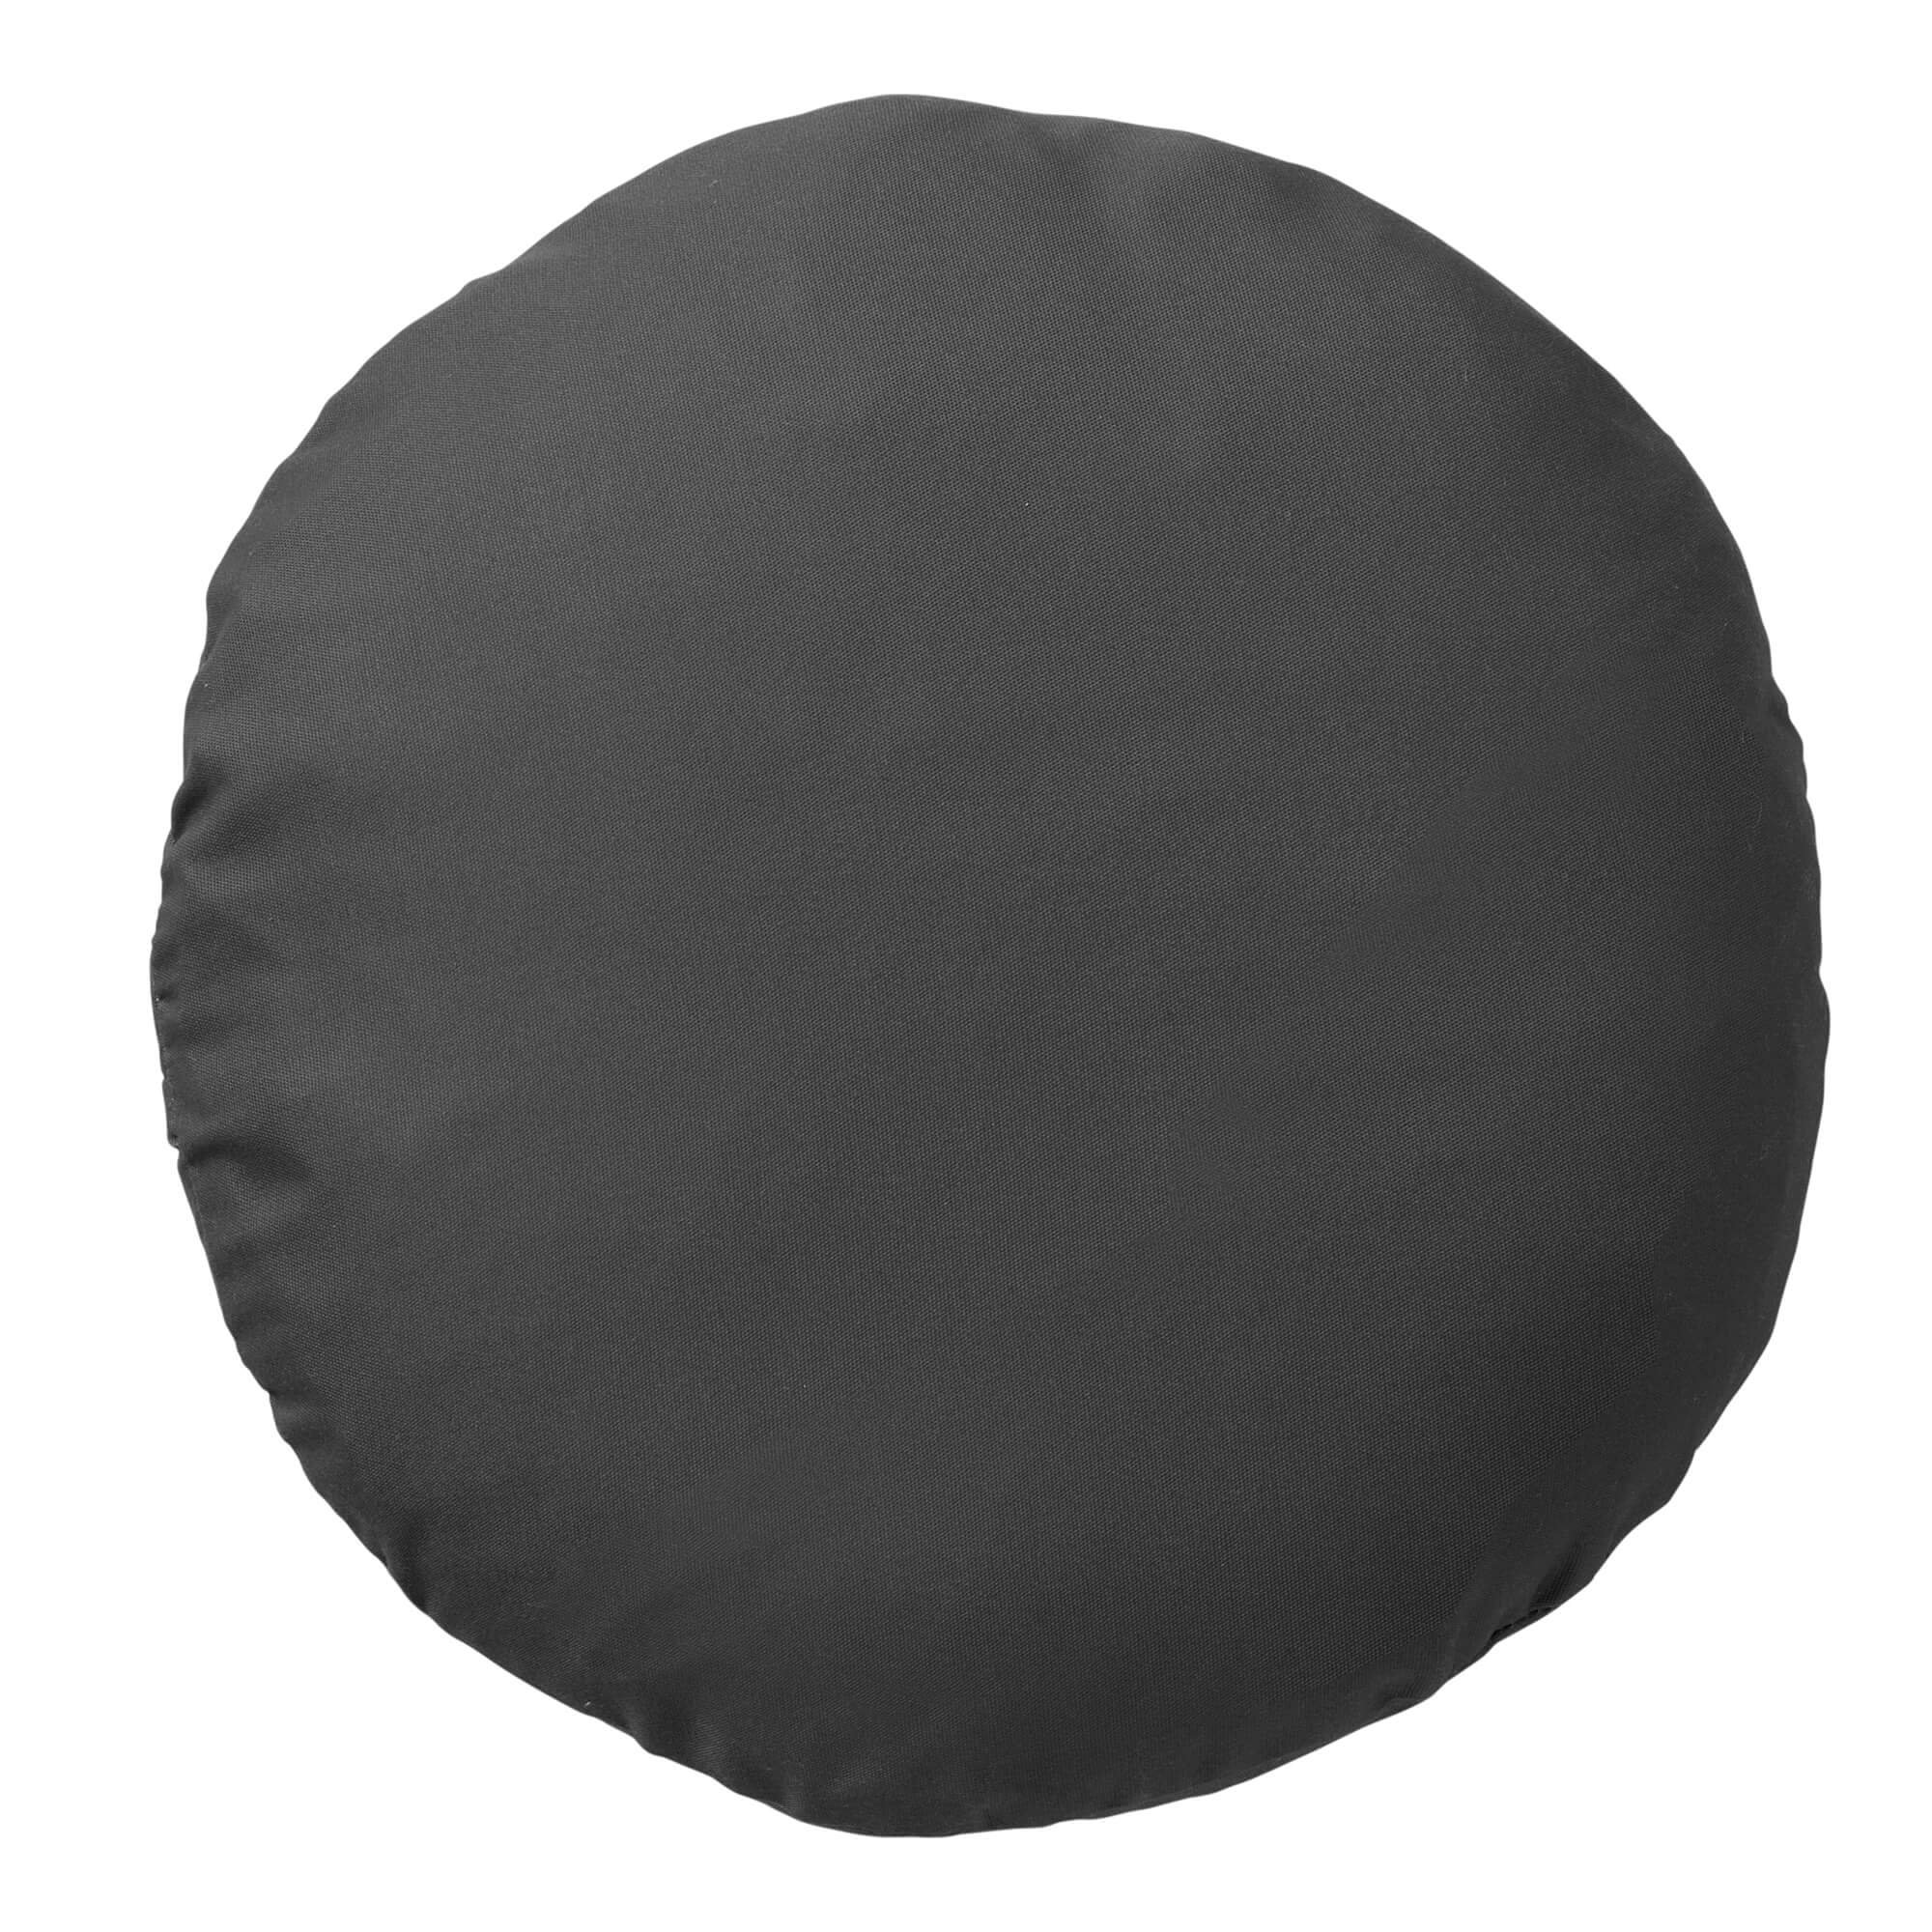 SOL - Buitenkussen rond Ø40 cm - waterafstotend en uv-bestendig - Charcoal Gray - antraciet